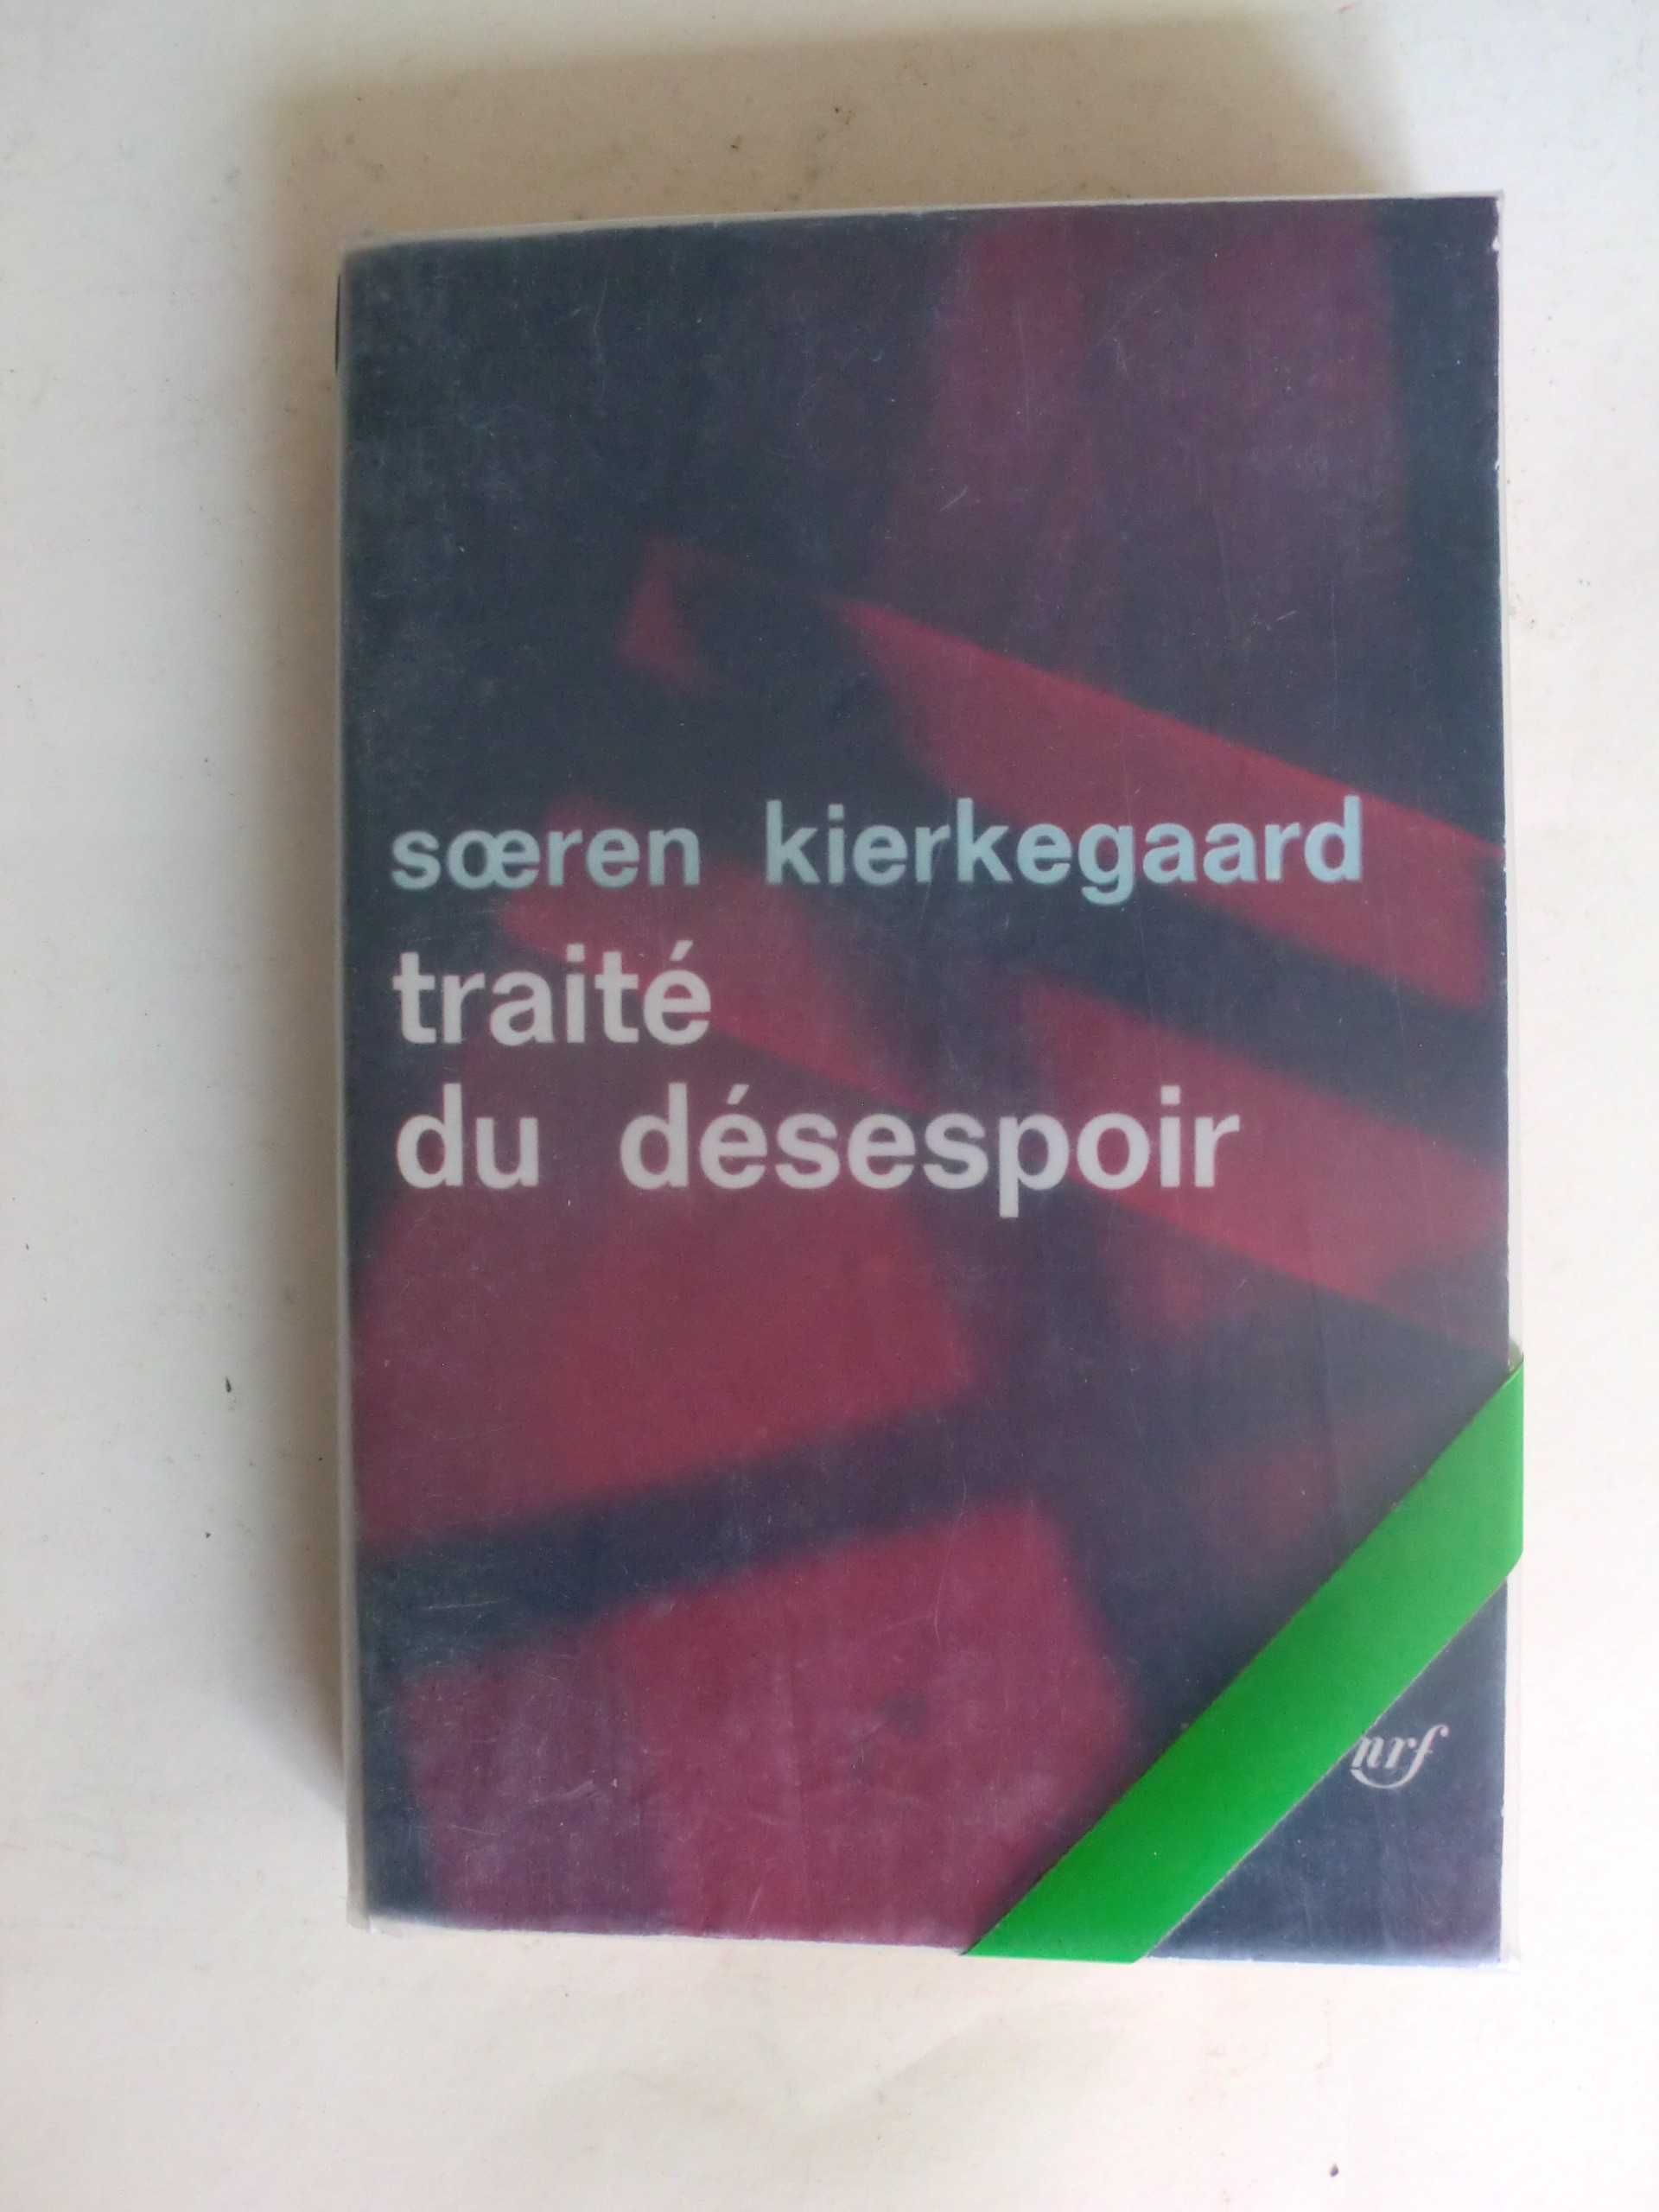 Traité du Désespoir
de Soeren Kierkegaard